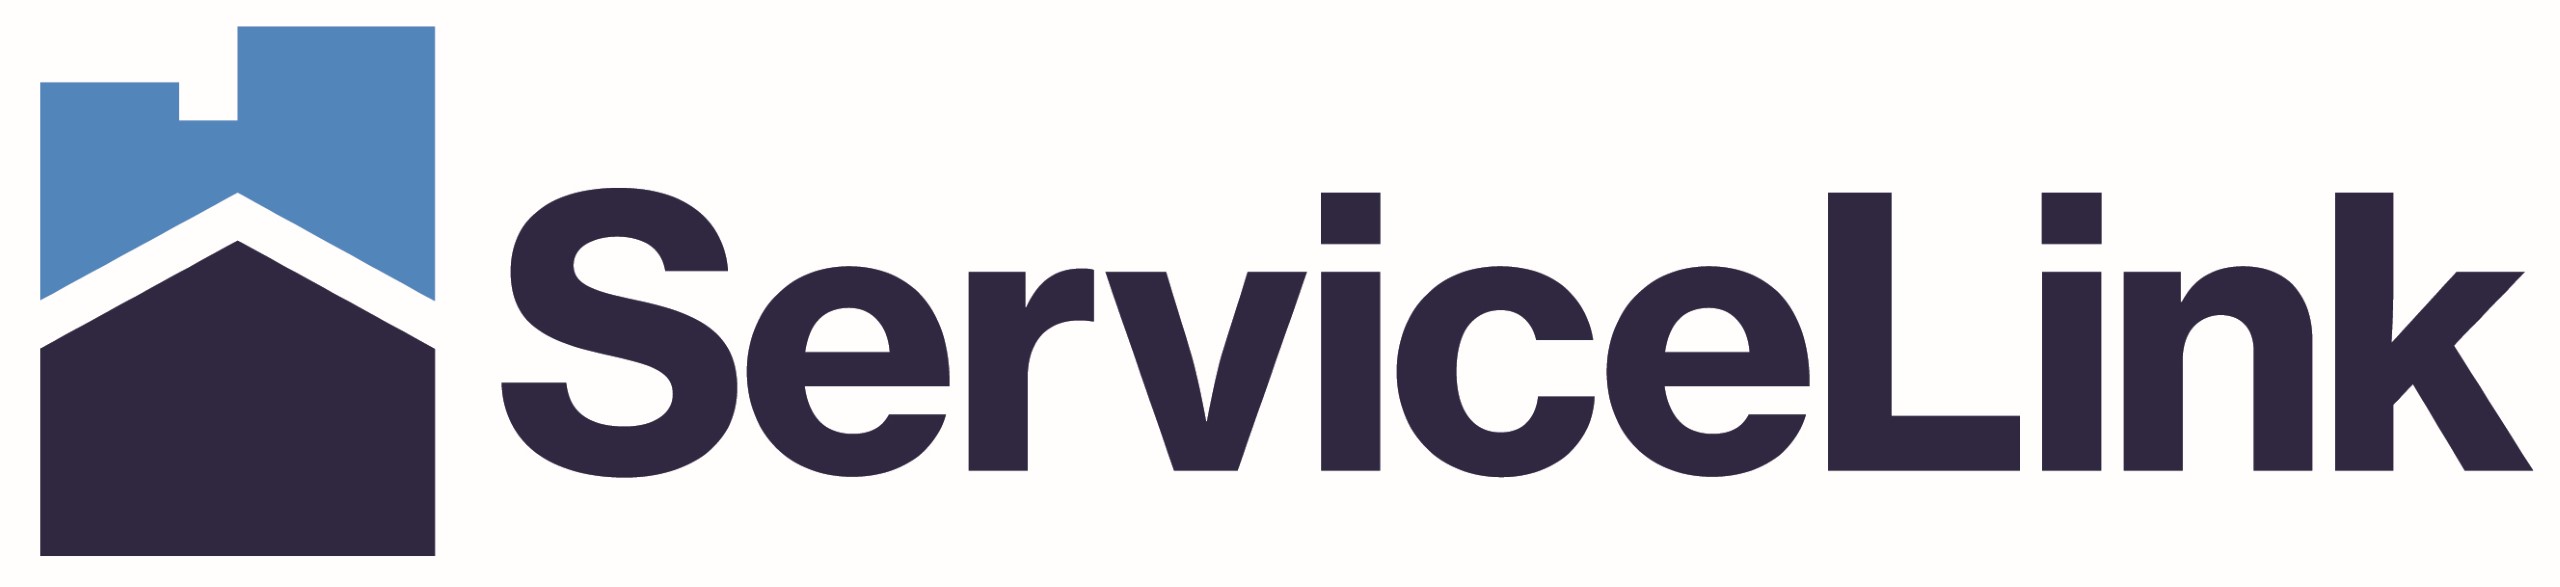 ServiceLink_Logo-1